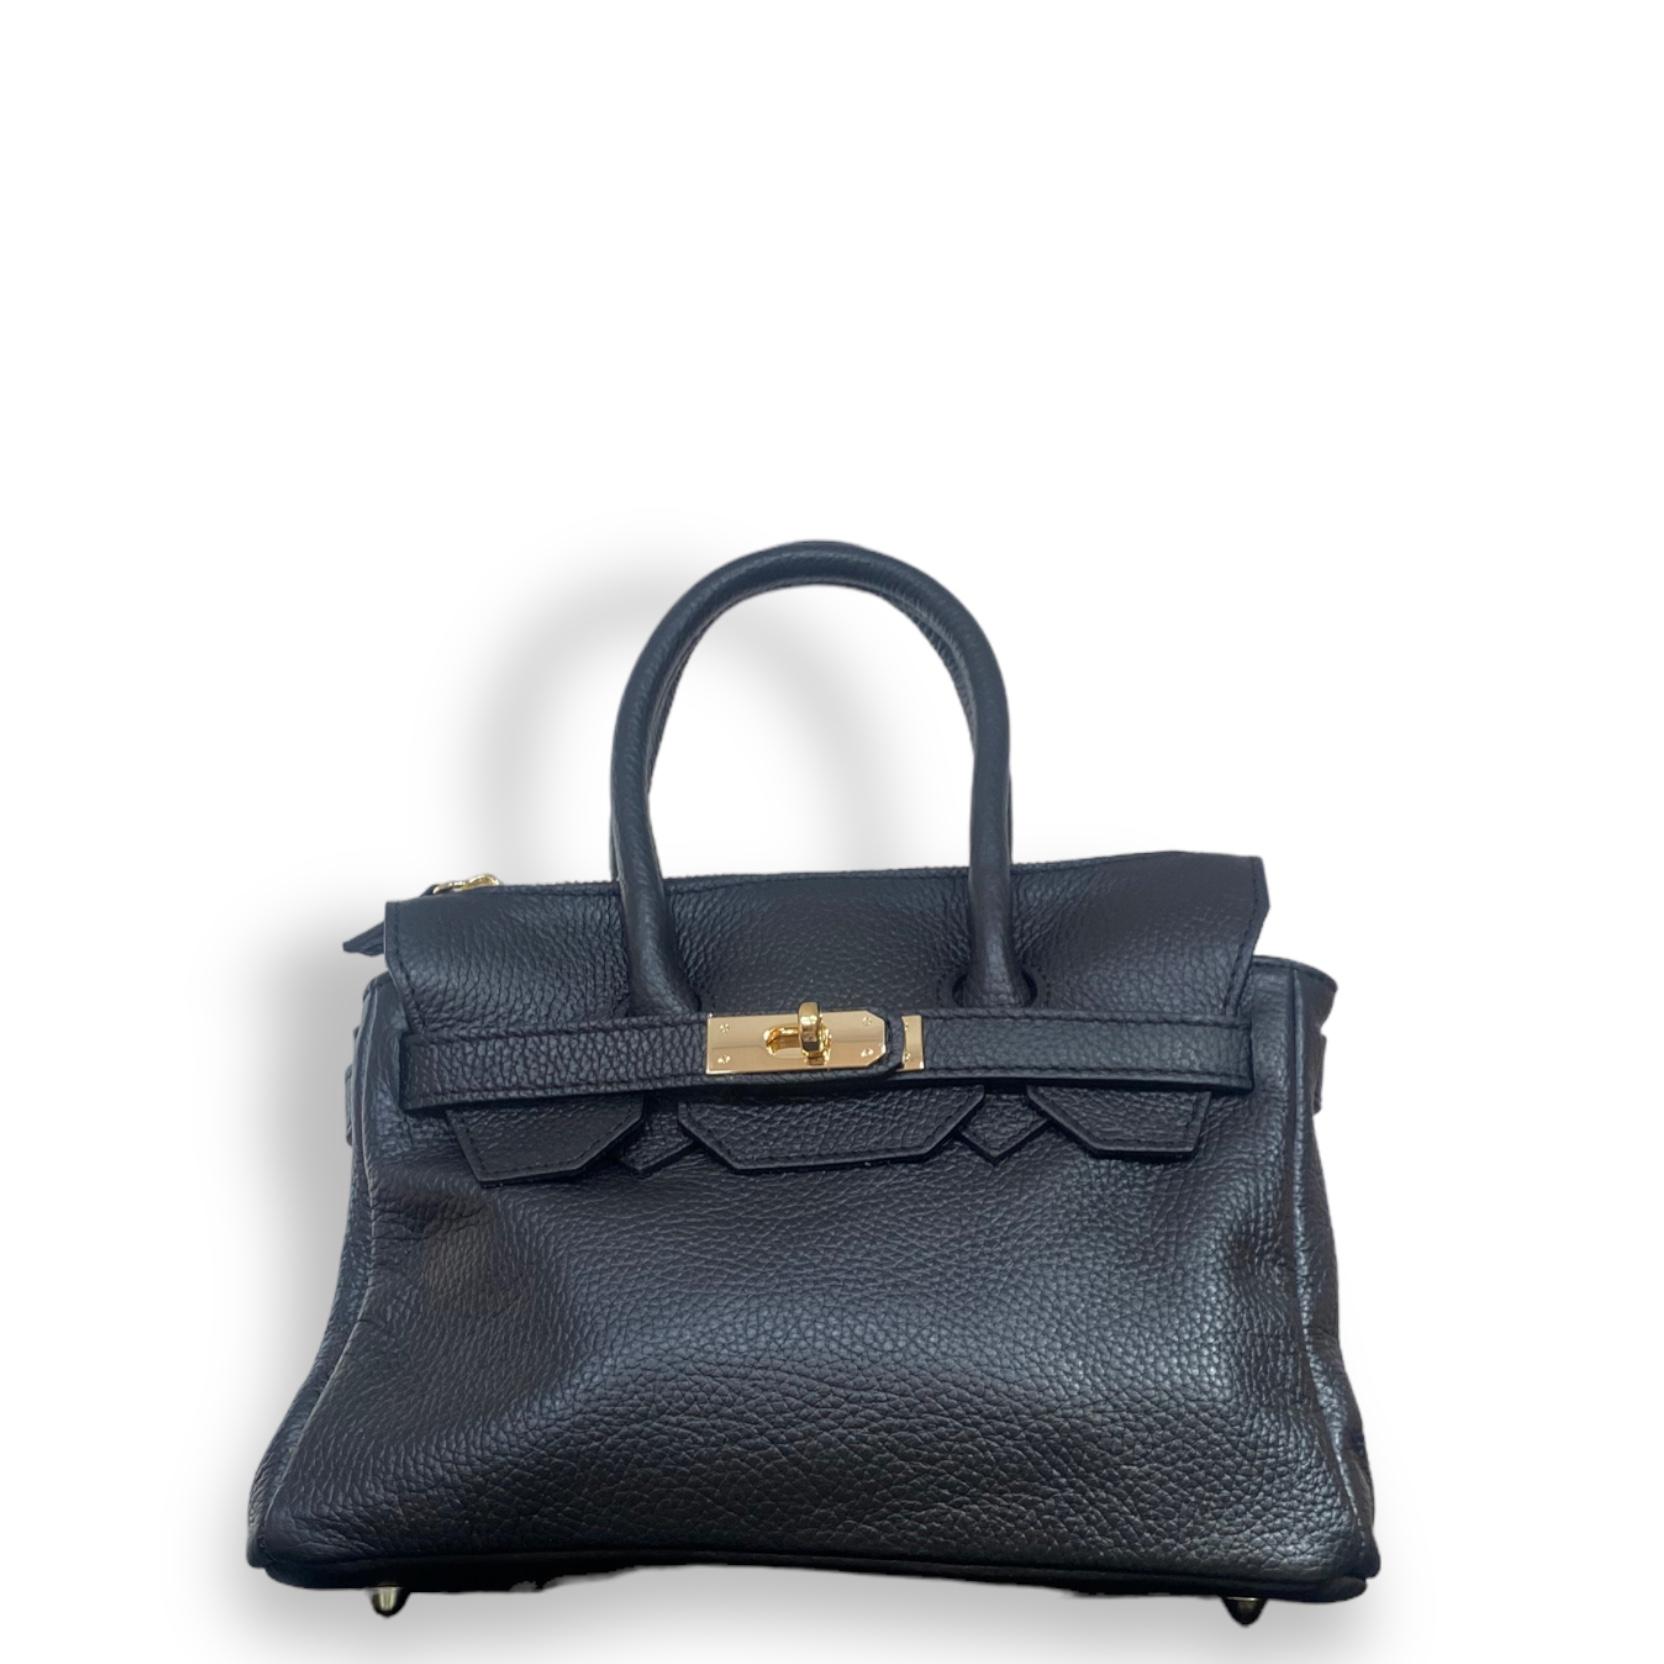 Mini handbag retro negro 